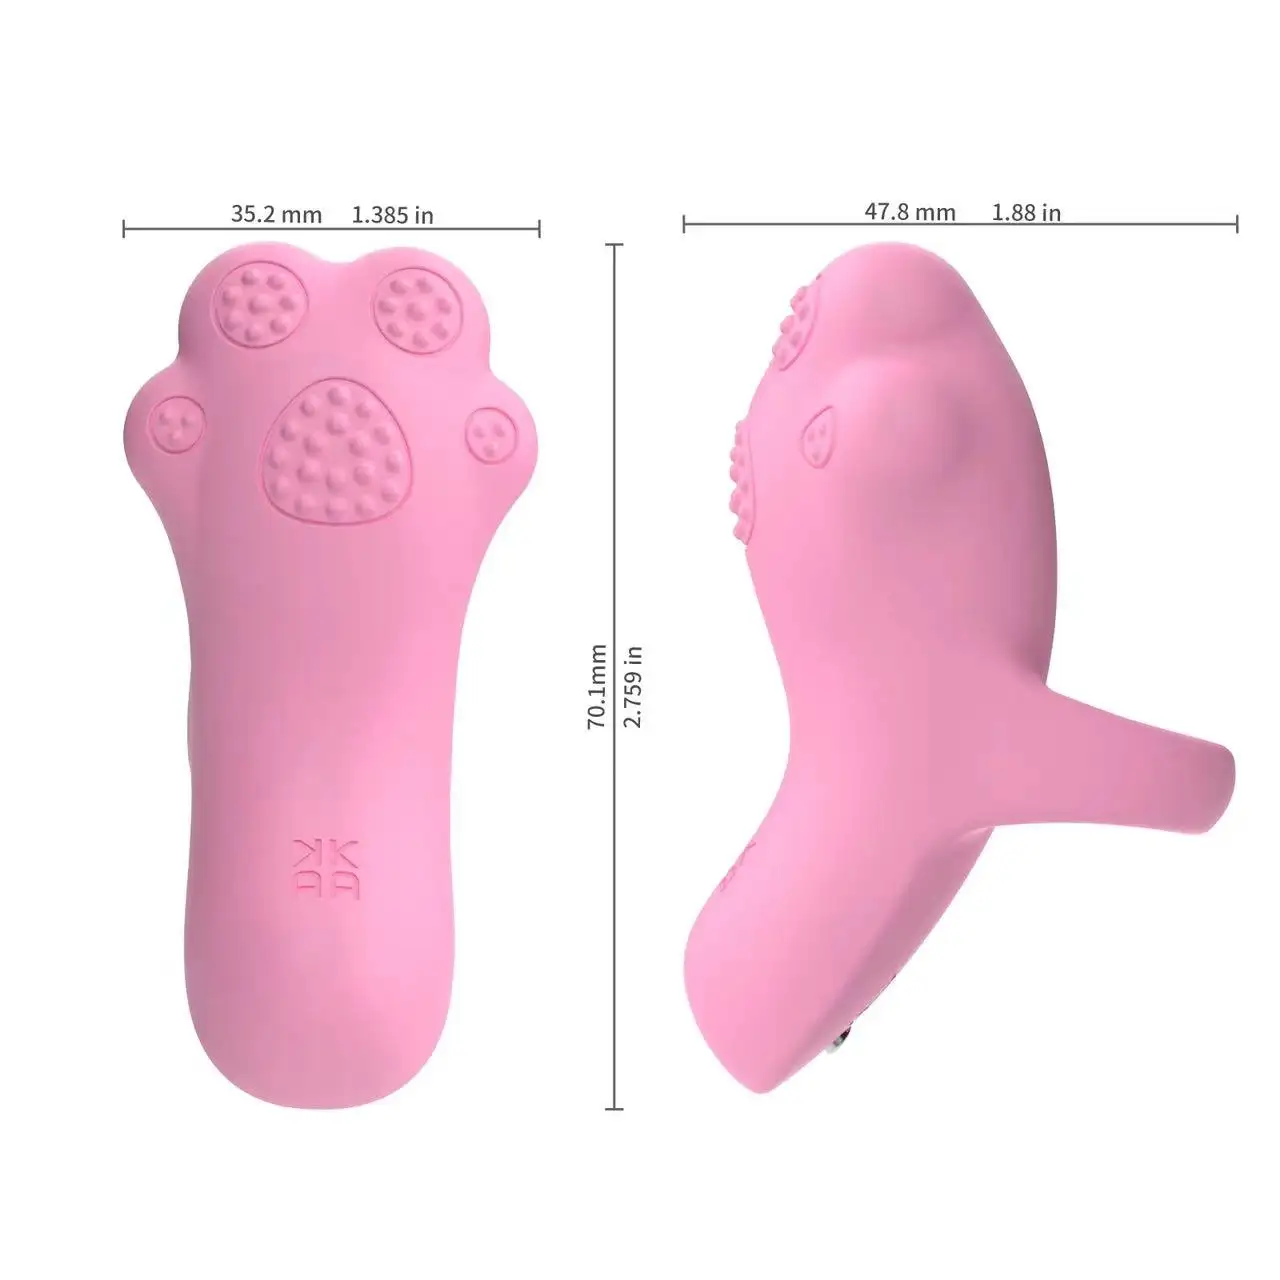 Nouveau arrivé Clitoris Mini masseur rose chat patte doigt vibrateur G Spot vibrateur anneau jouets sexuels pour les femmes